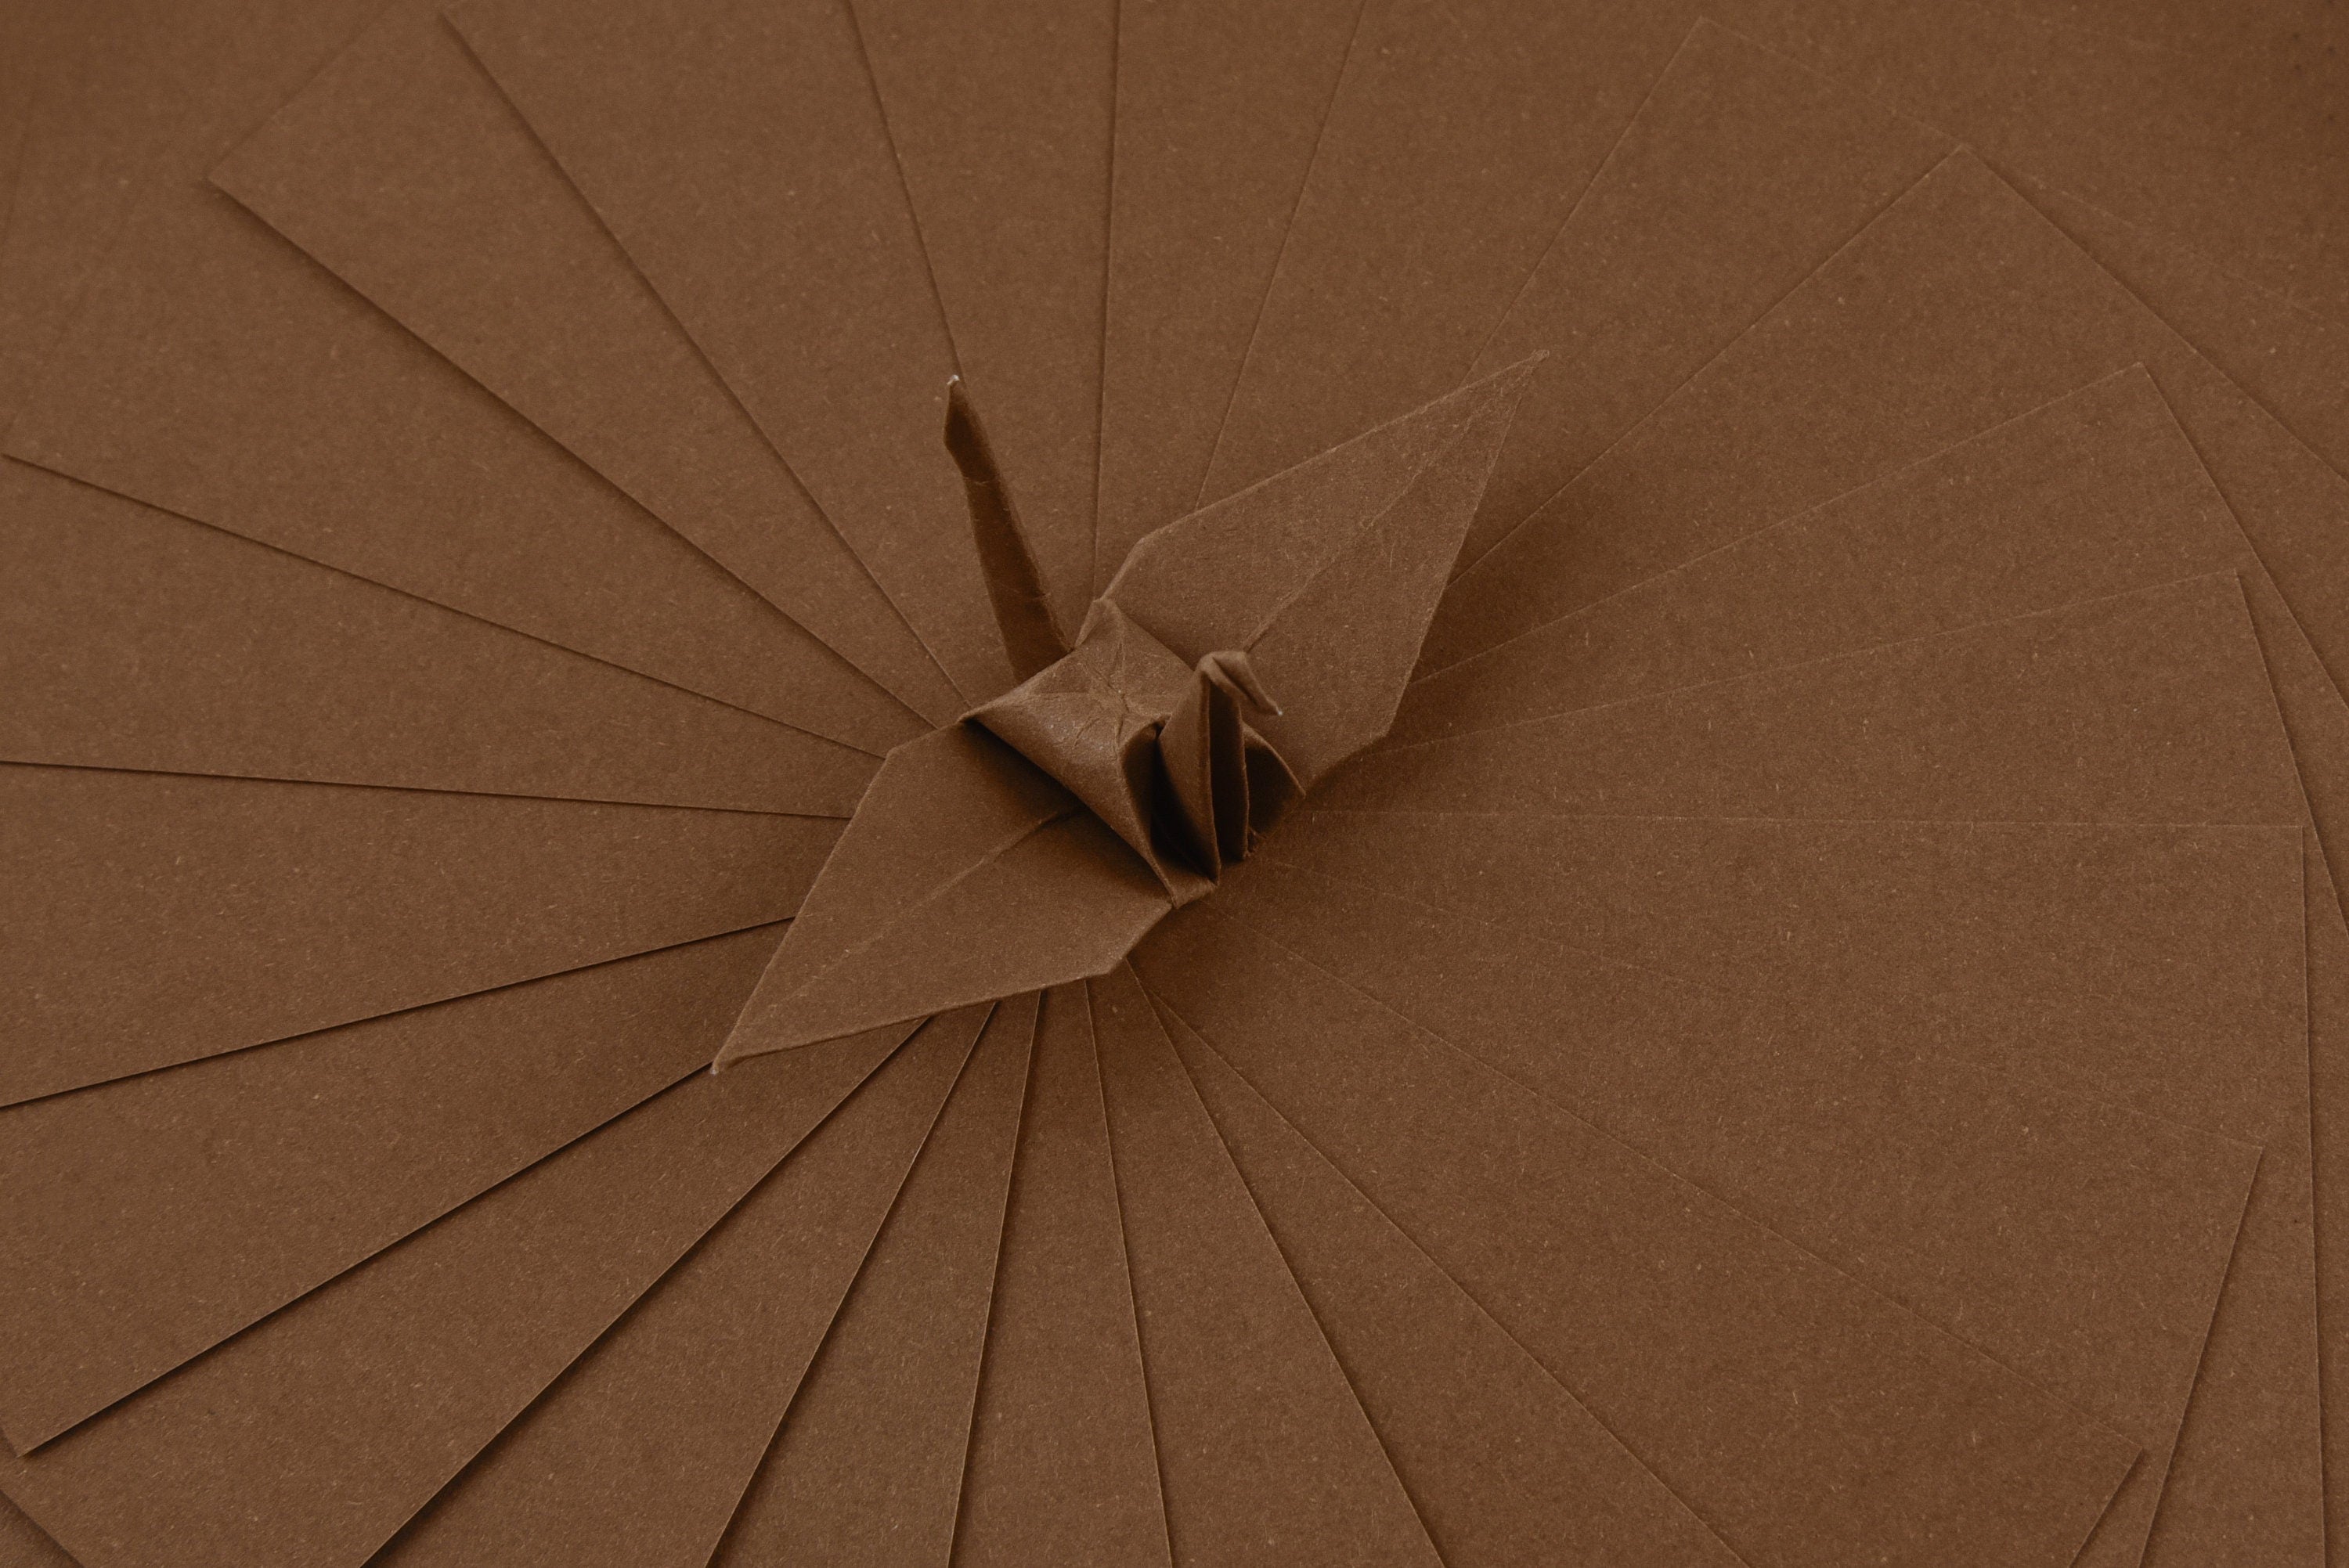 100 fogli di carta origami marrone - 6x6 pollici - Confezione di carta quadrata per piegare, gru origami e decorazioni - S07